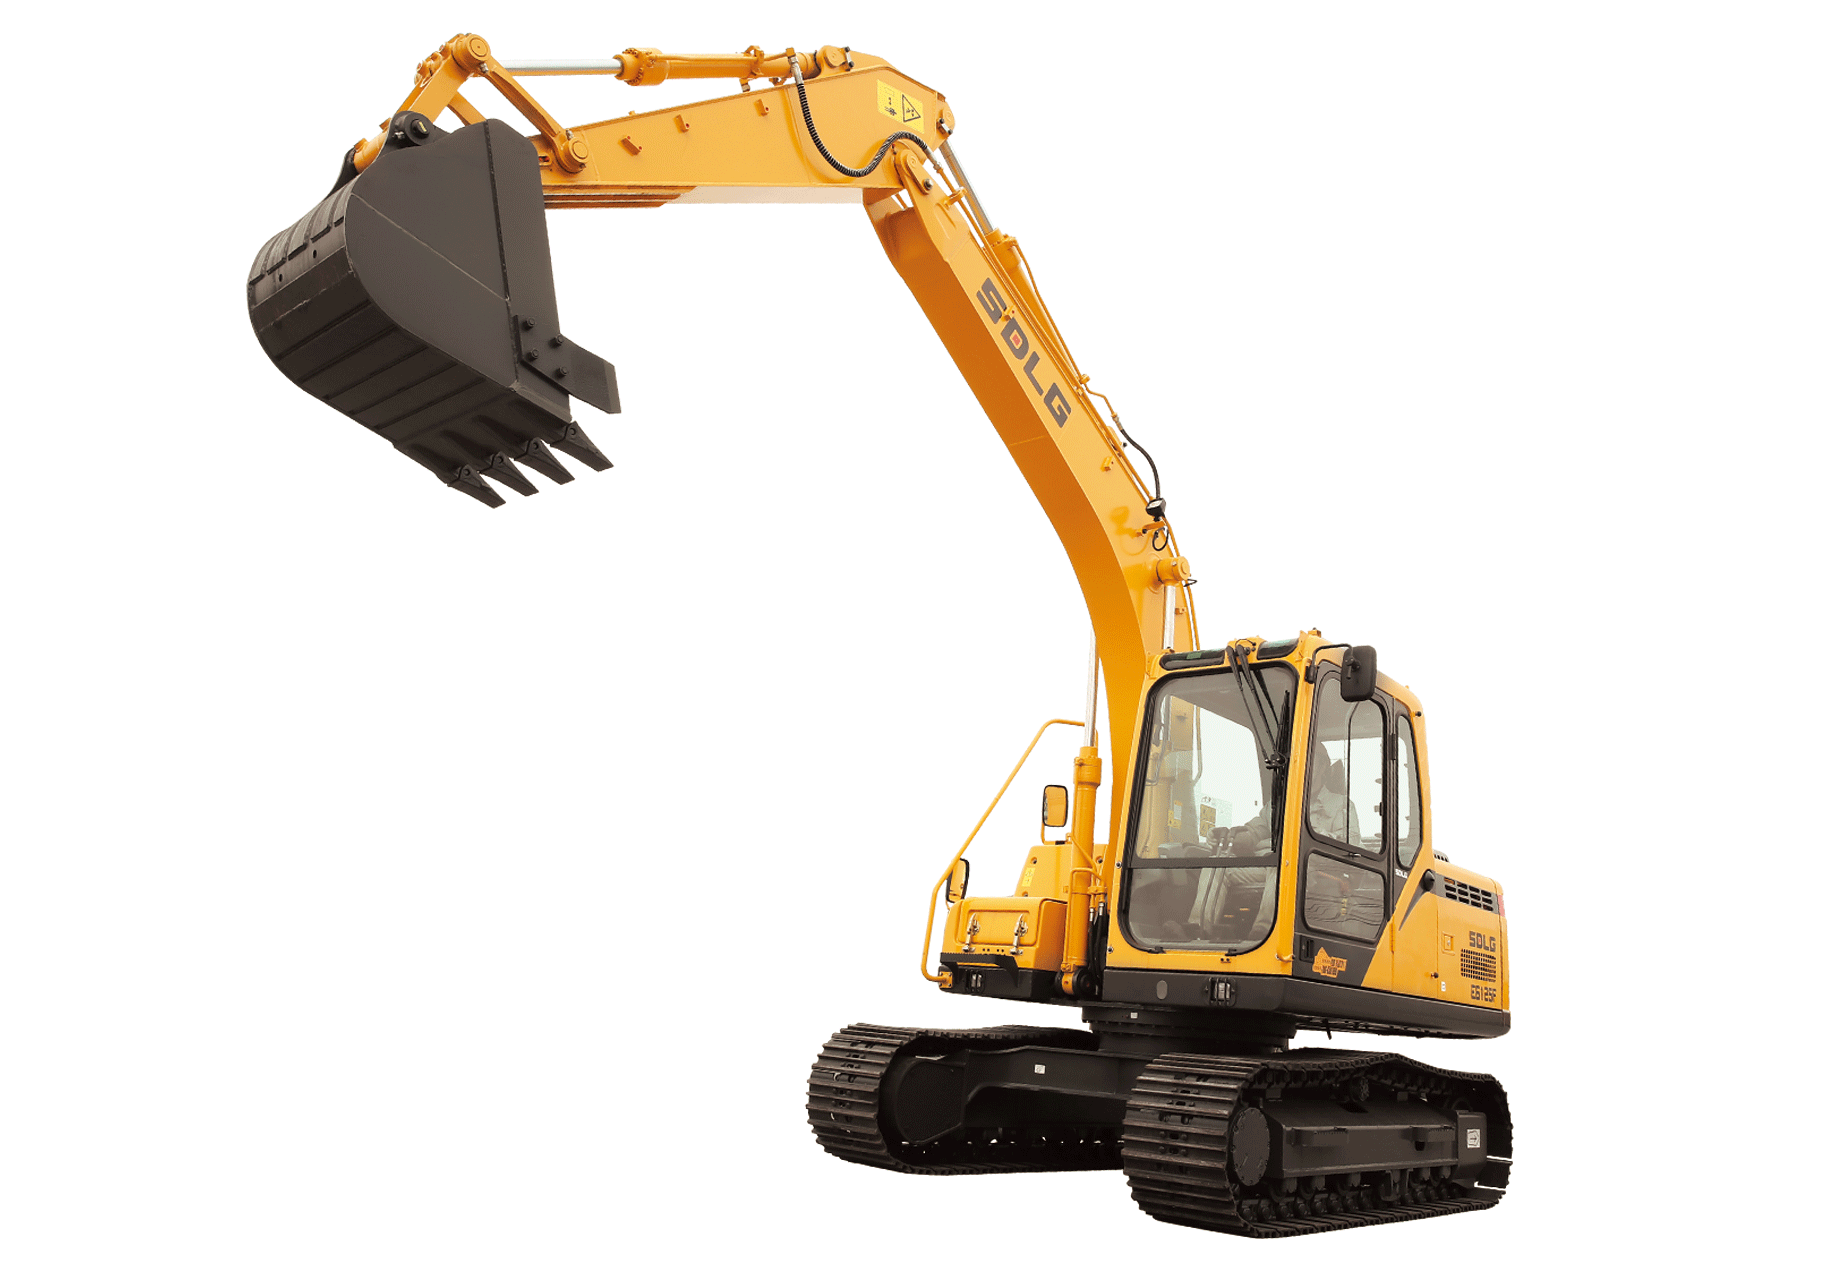 New excavator SDLG excavator E6125FL second-hand excavator